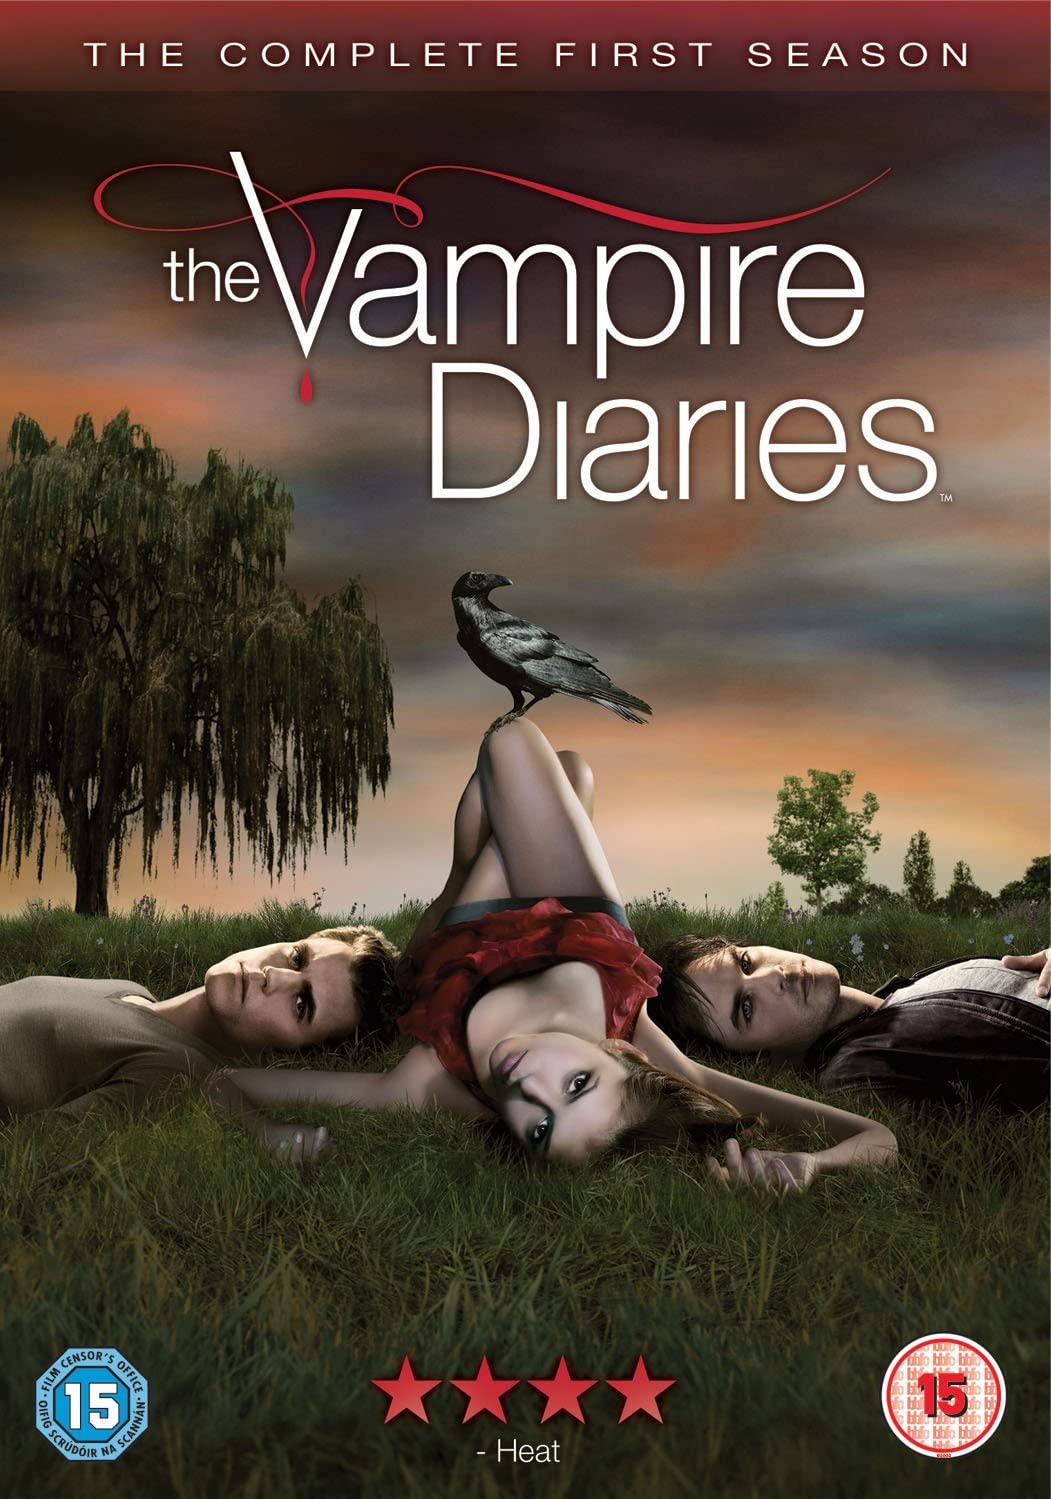 Vampire Diaries S1 S) [2010] - Drama [DVD]